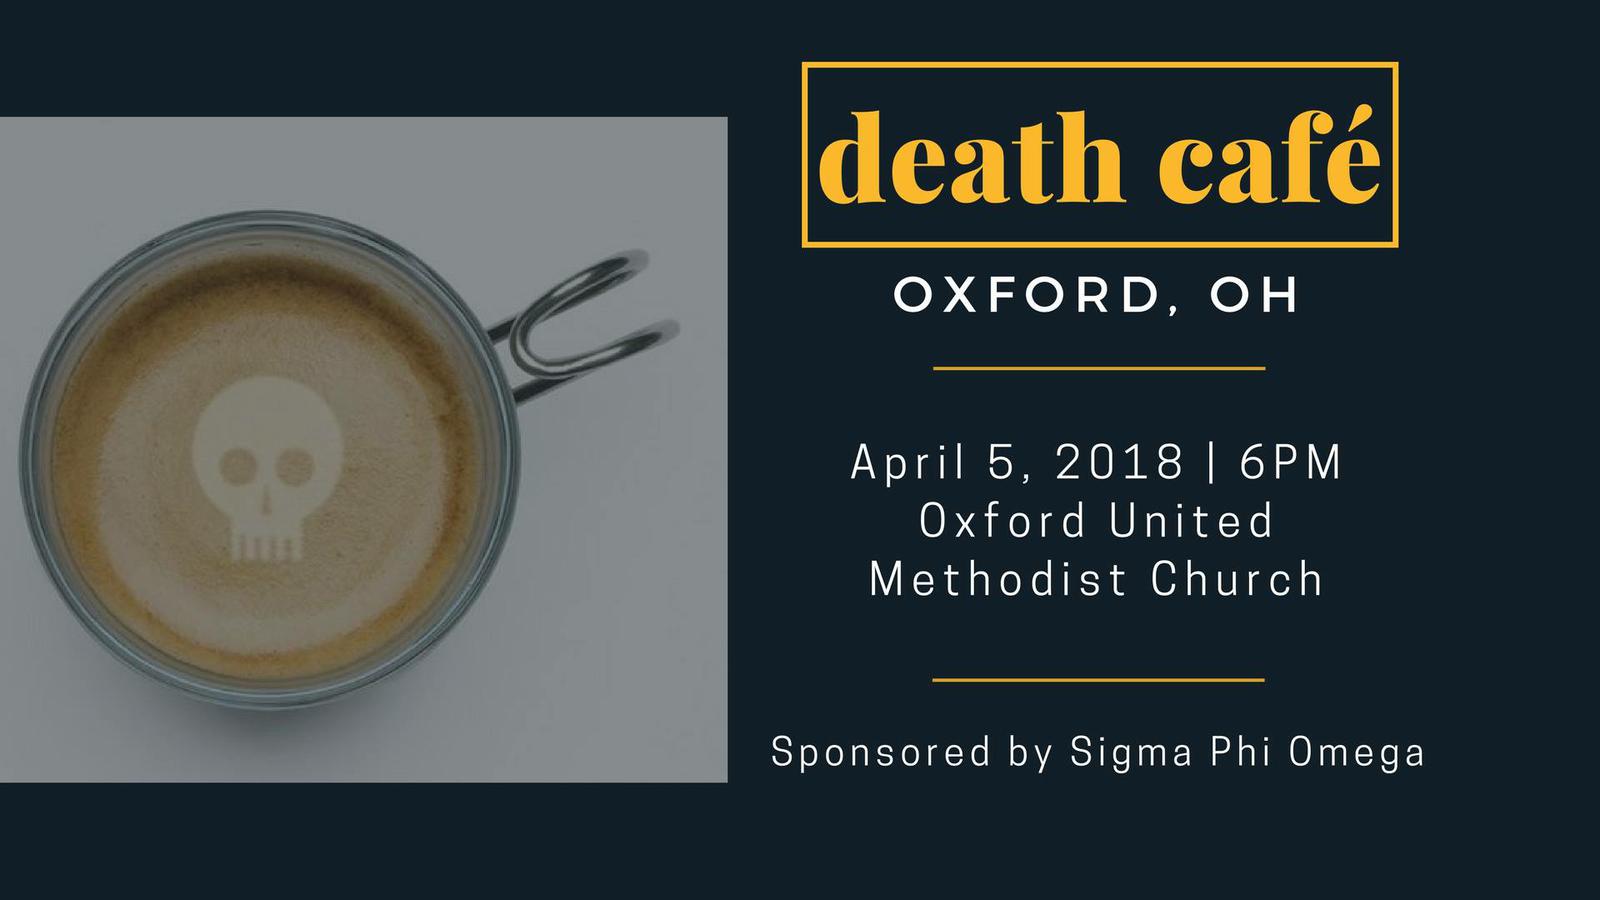 Oxford Ohio Death Cafe